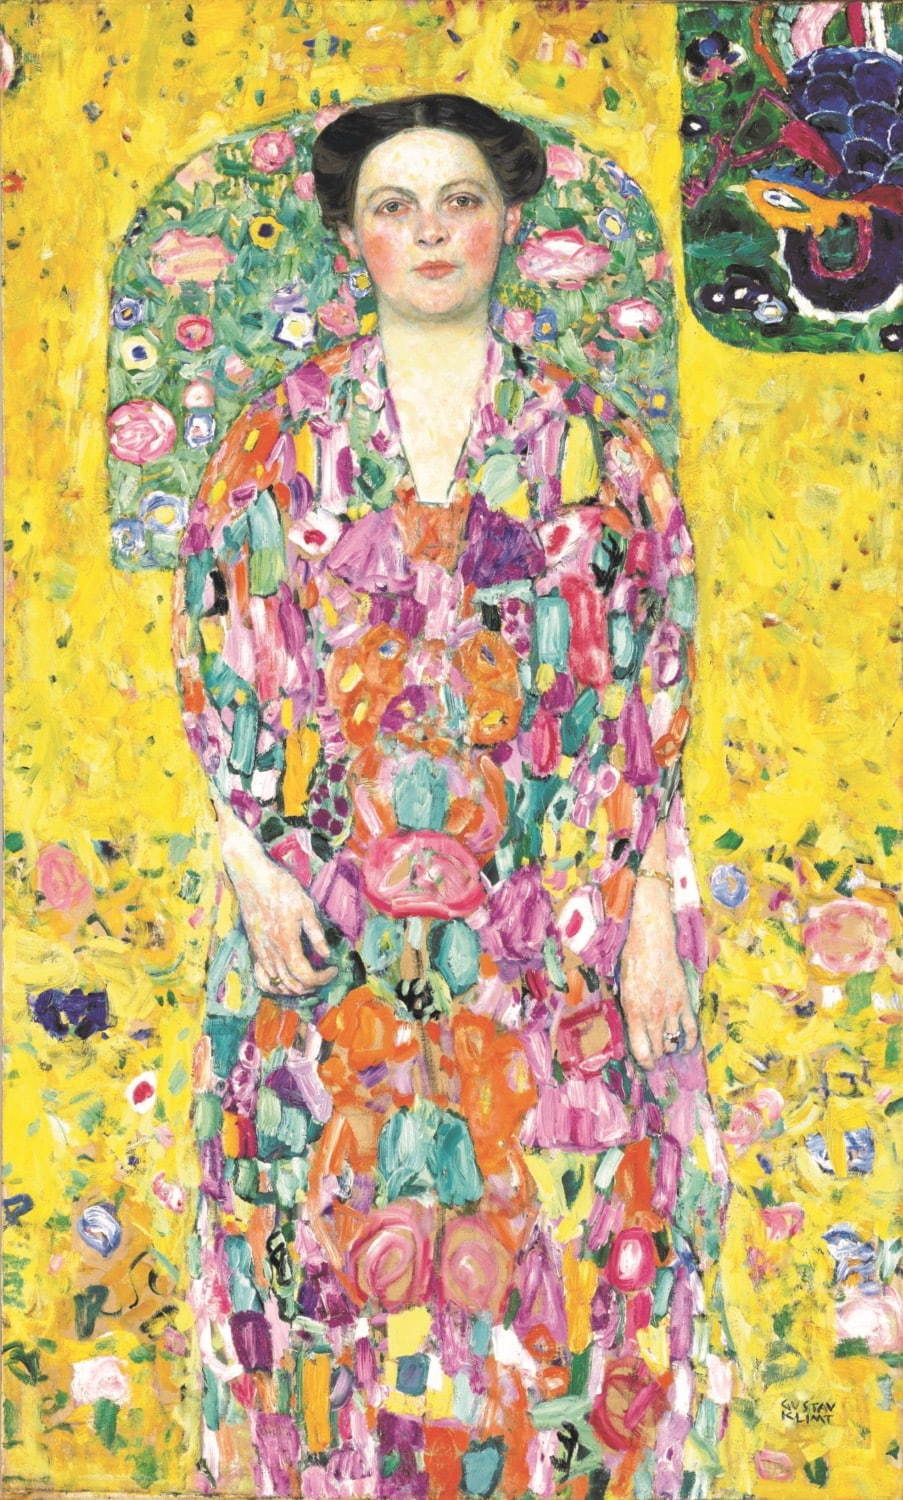 グスタフ・クリムト《オイゲニア・プリマフェージの肖像》1913/14年 豊田市美術館蔵